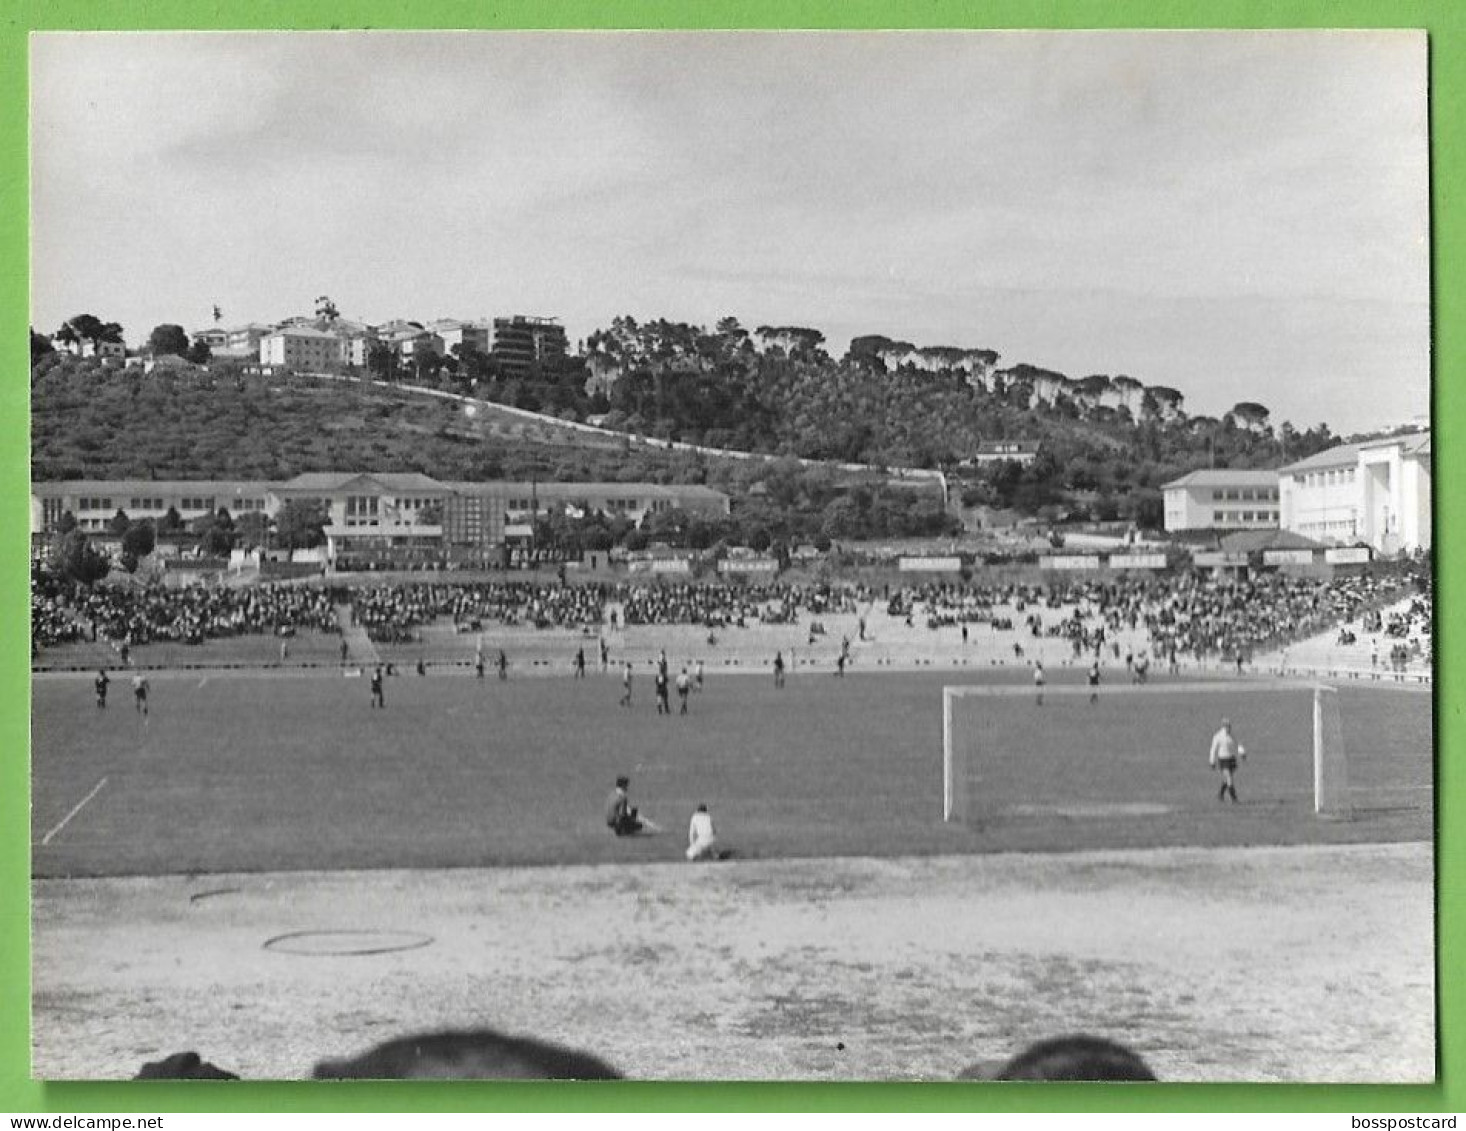 Coimbra - REAL PHOTO - Estádio De Futebol Da Académica - Stadium - Football - Portugal - Stadien